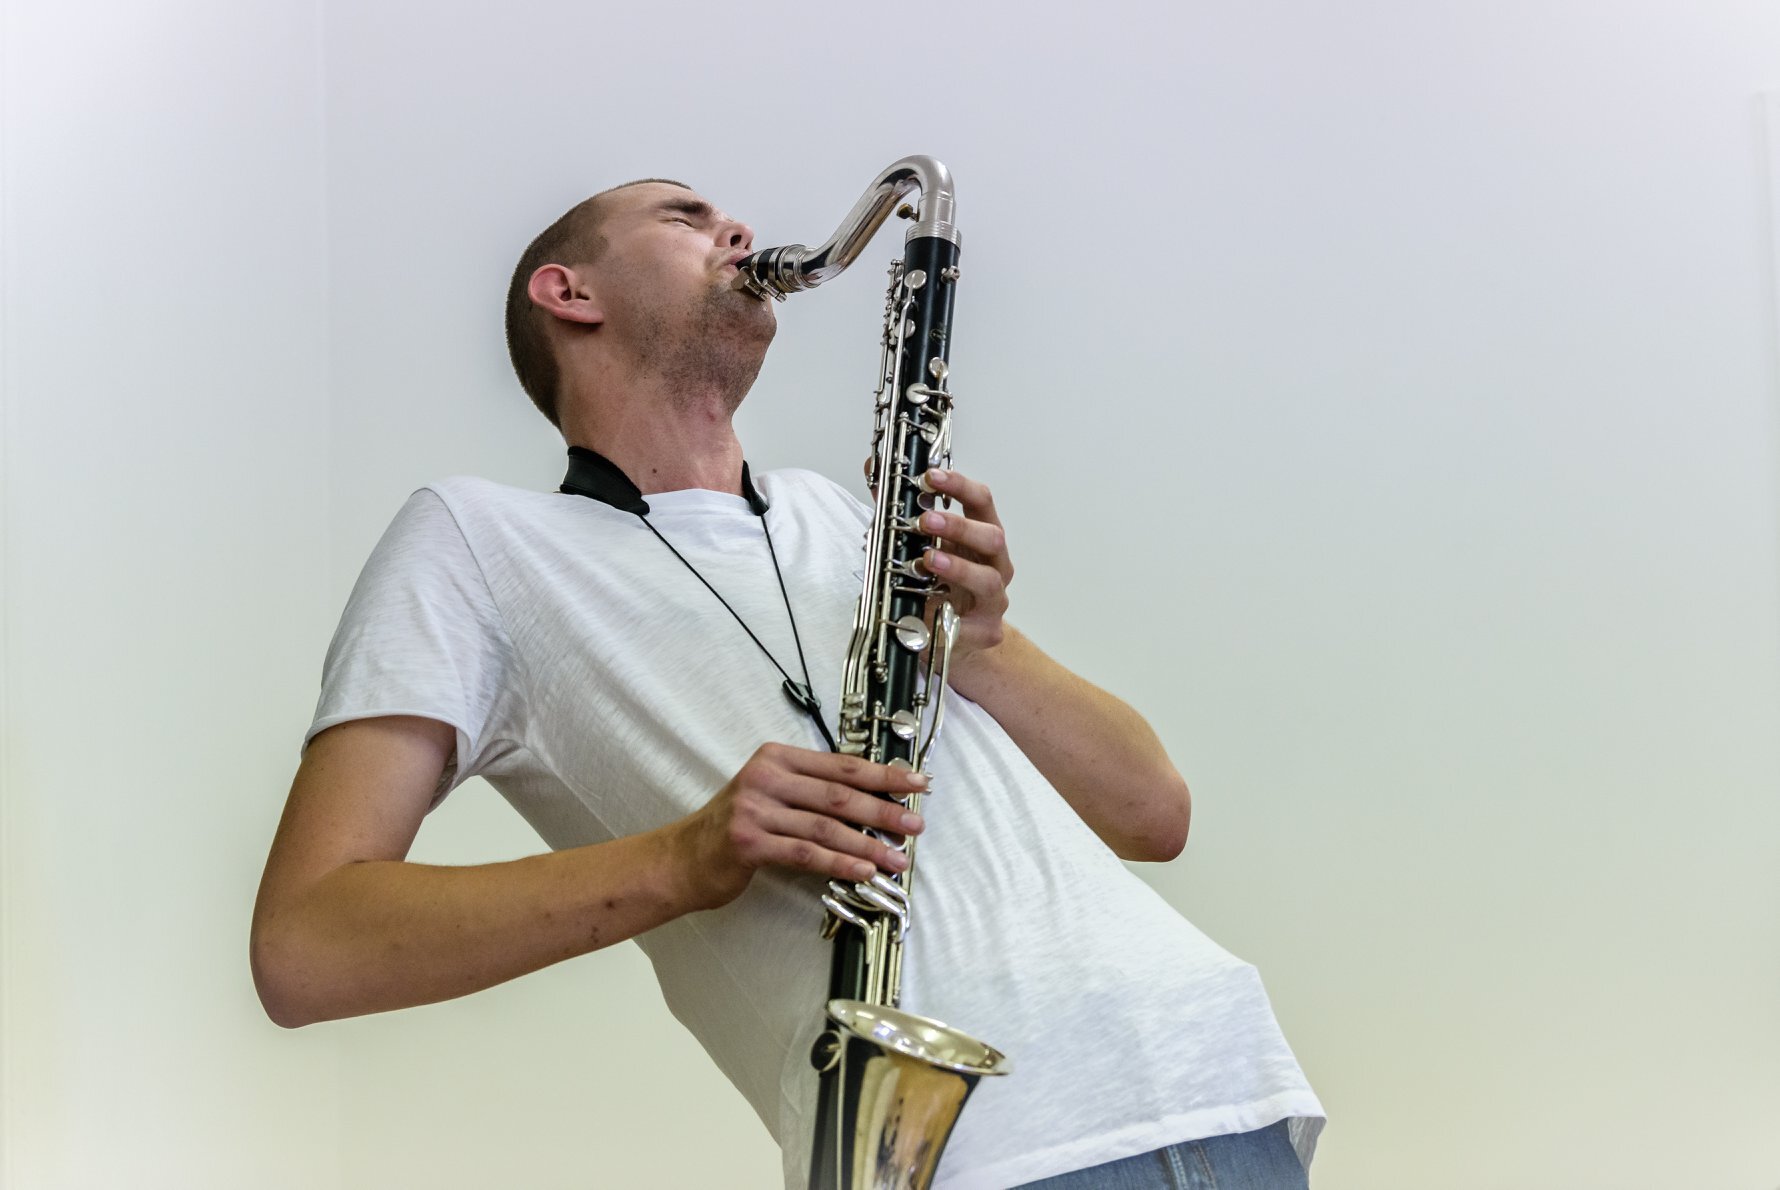 Mann i hvit skjorte lener seg bakover mens han spiller klarinett